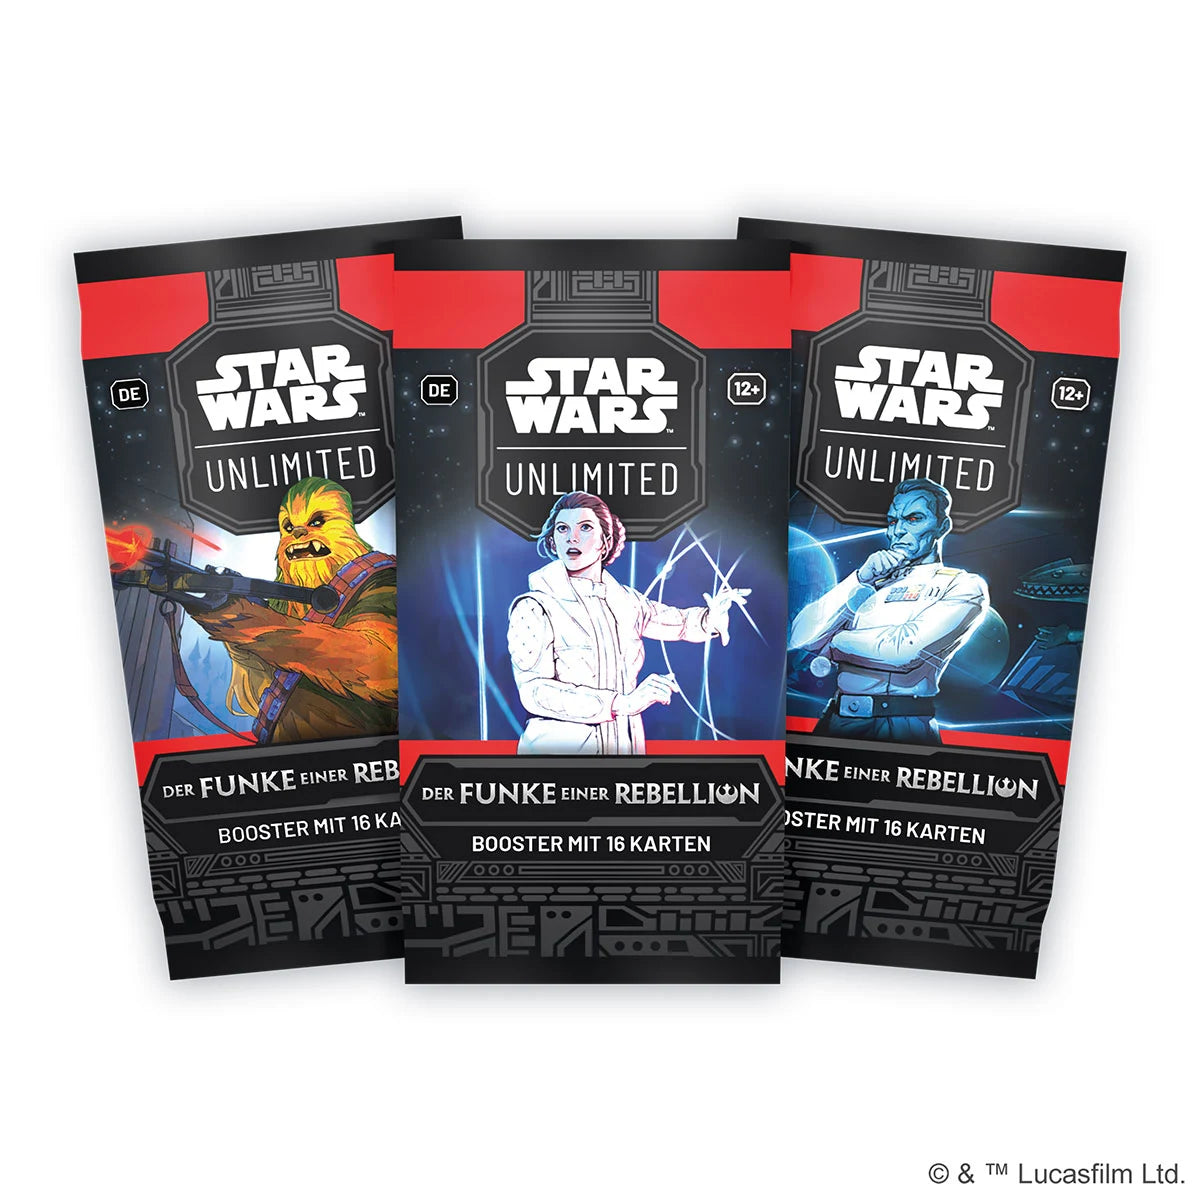 Display des Trading Card Games Star Wars: Unlimited aus der Reihe "Der Funke einer Rebellion".